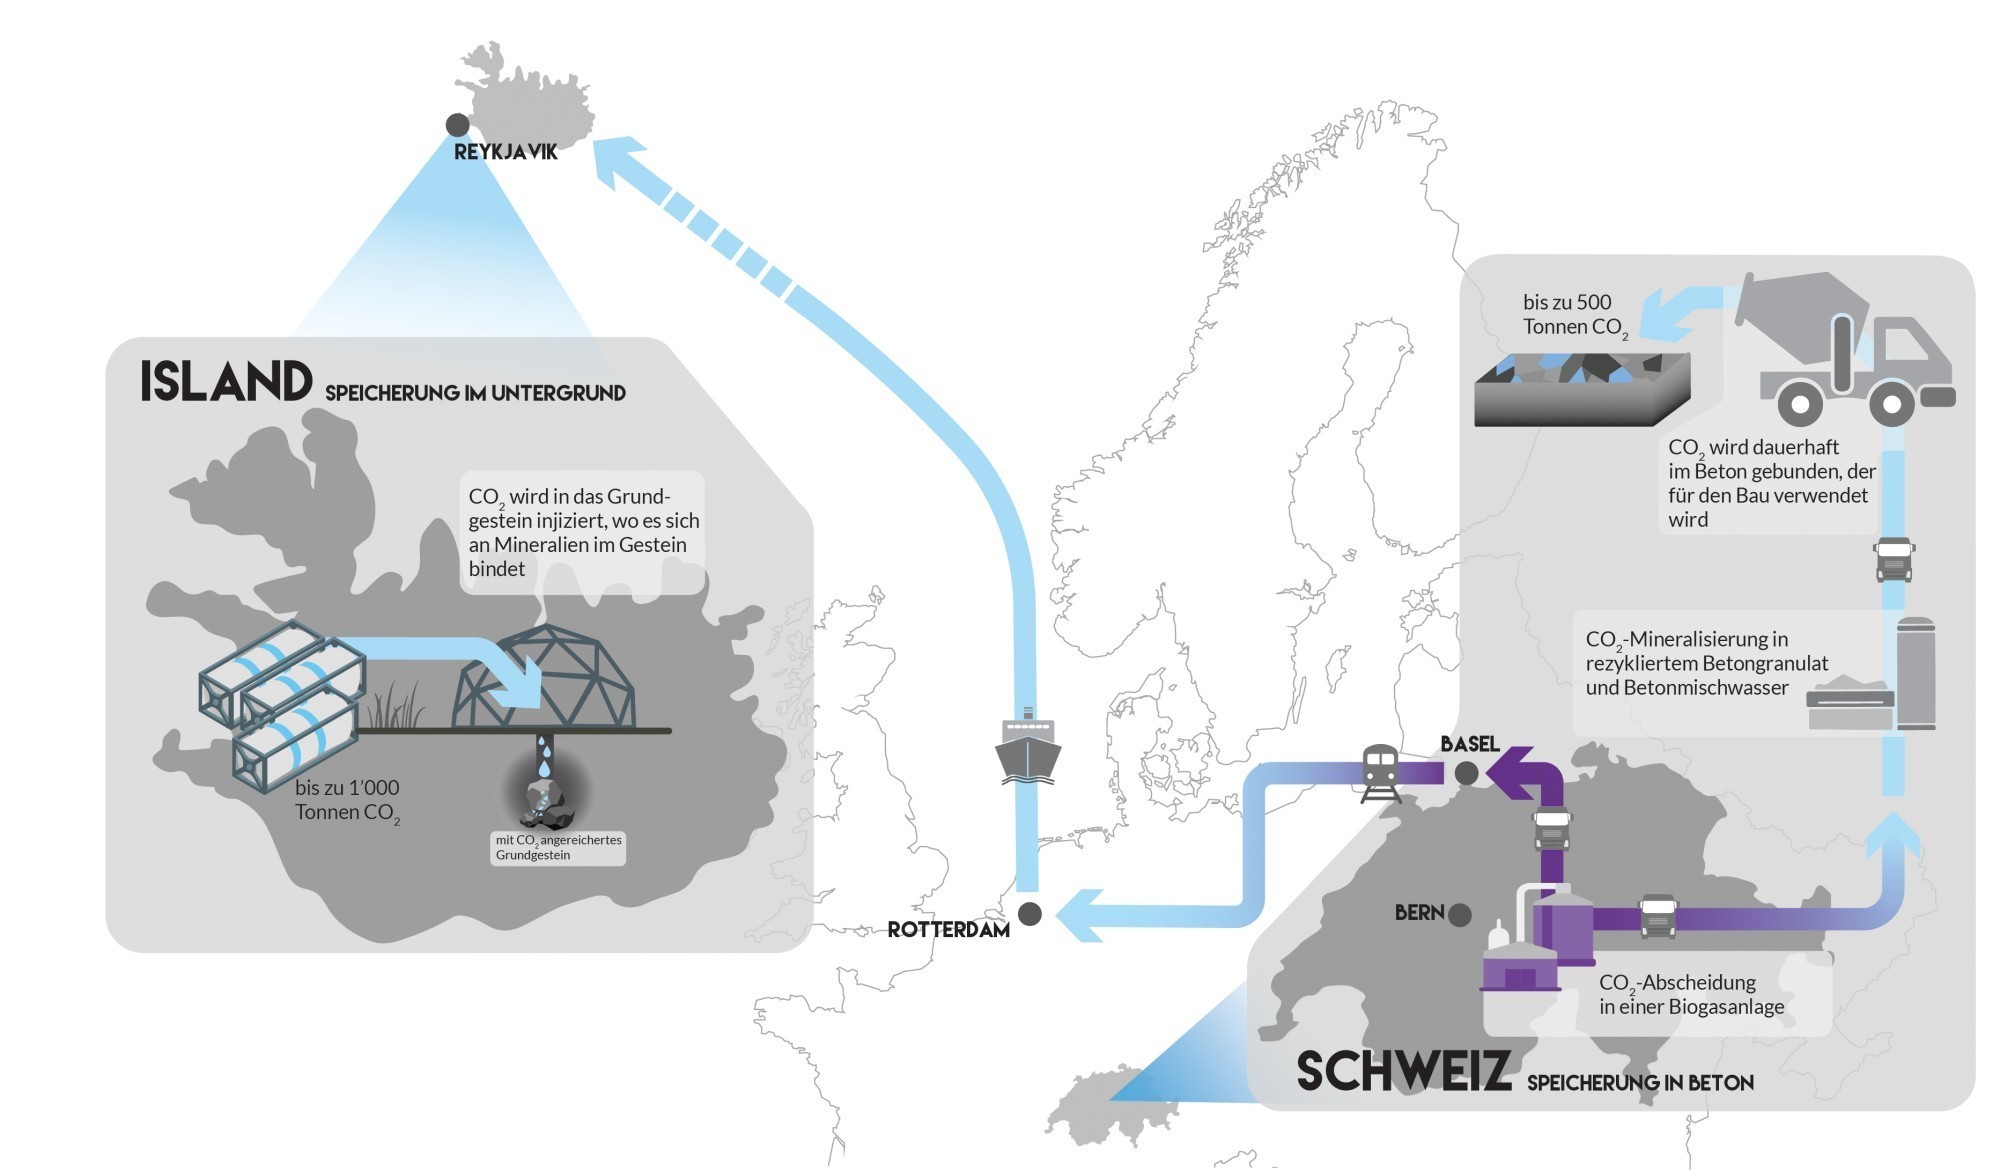 Le schéma montre l'ensemble de la chaîne de processus, du captage du CO2 en Suisse au stockage dans le sous-sol en Islande.